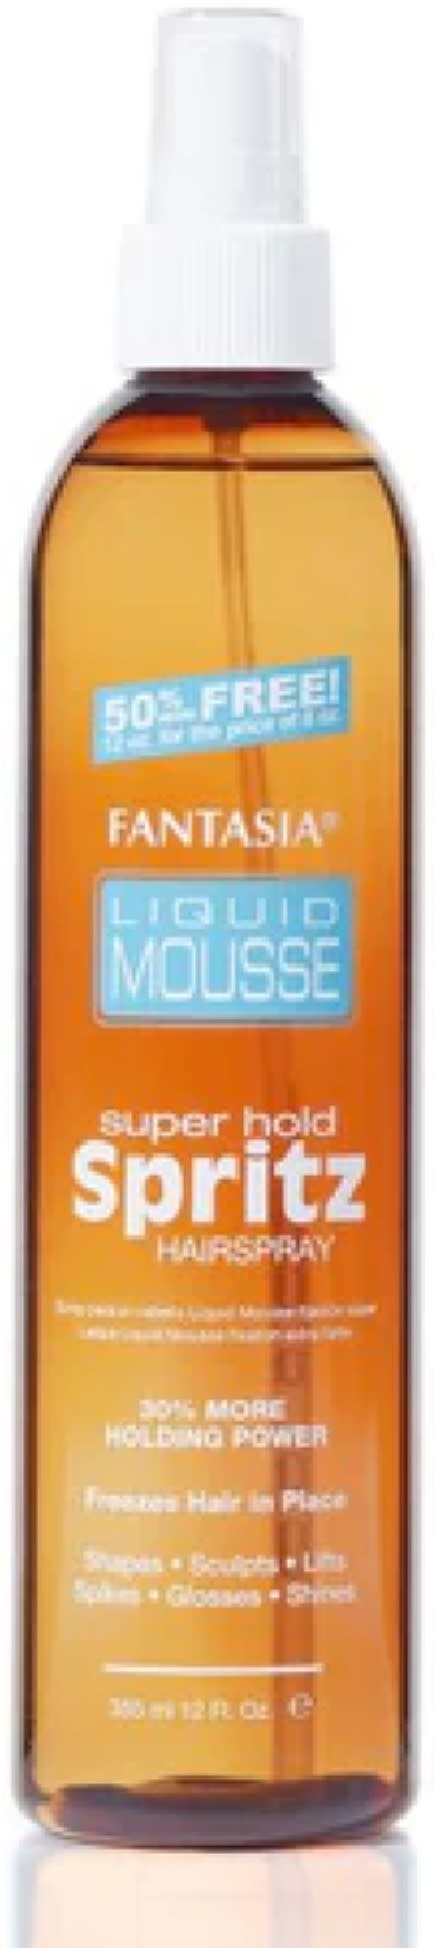 Fantasia IC Liquid Mousse Super Hold Spritz Hairspray